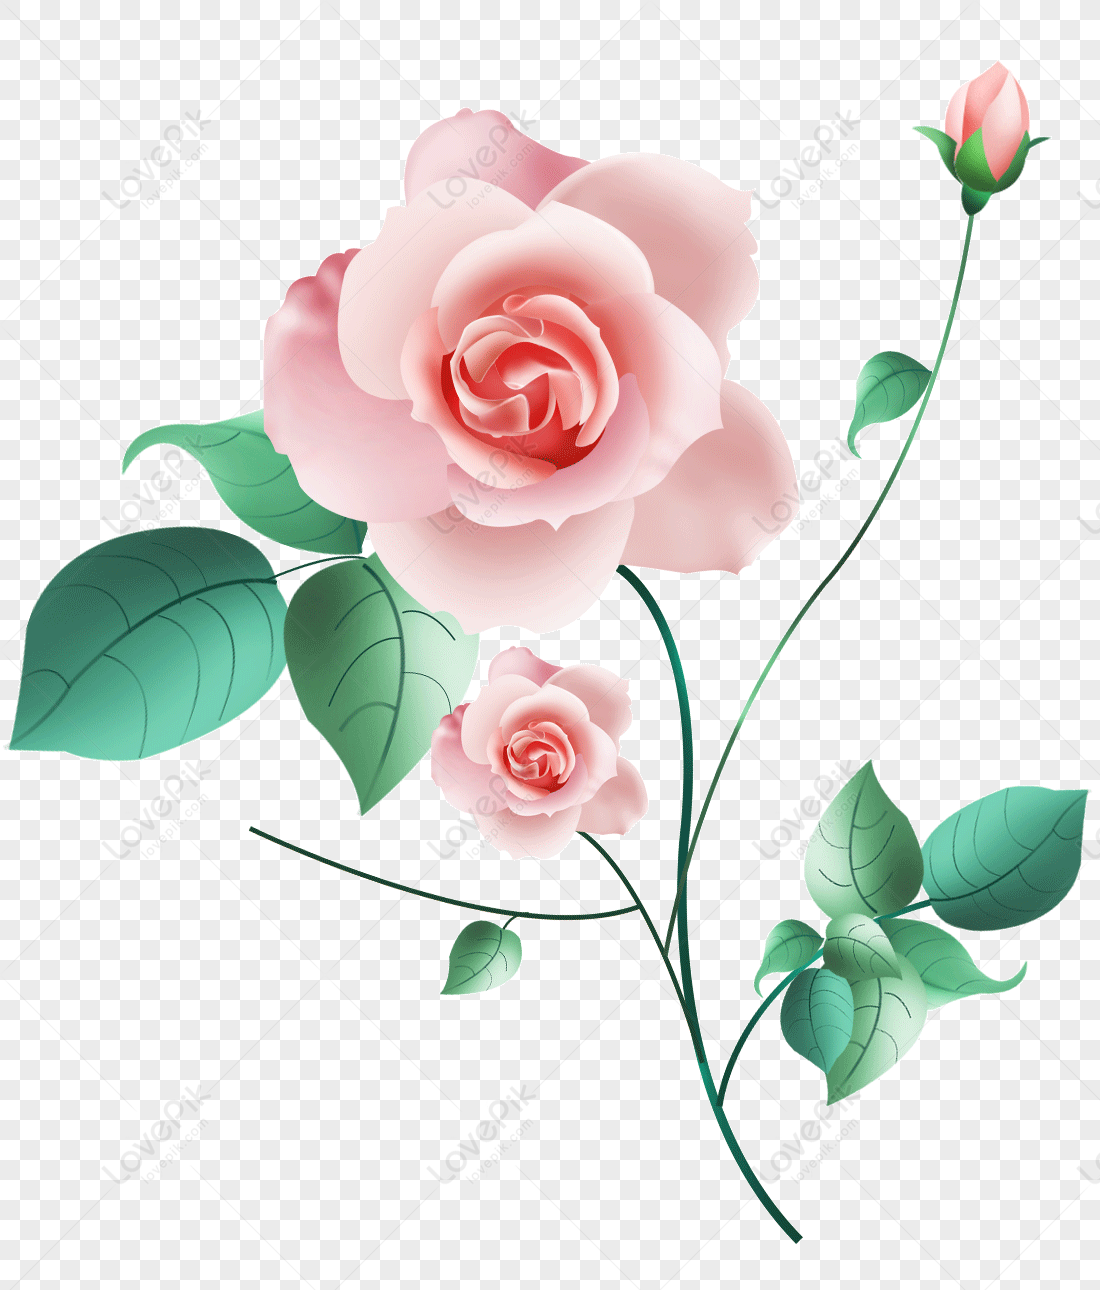 Hoa Hồng Màu Hồng PNG: Hoa hồng màu hồng luôn là một trong những loài hoa được yêu thích nhất bởi vẻ đẹp tinh tế và không kém phần quyến rũ. Với ảnh Hoa Hồng Màu Hồng PNG, bạn sẽ được đắm mình vào những bông hoa rực rỡ và cảm nhận hương thơm ngọt ngào quyến rũ ngay tại nhà.